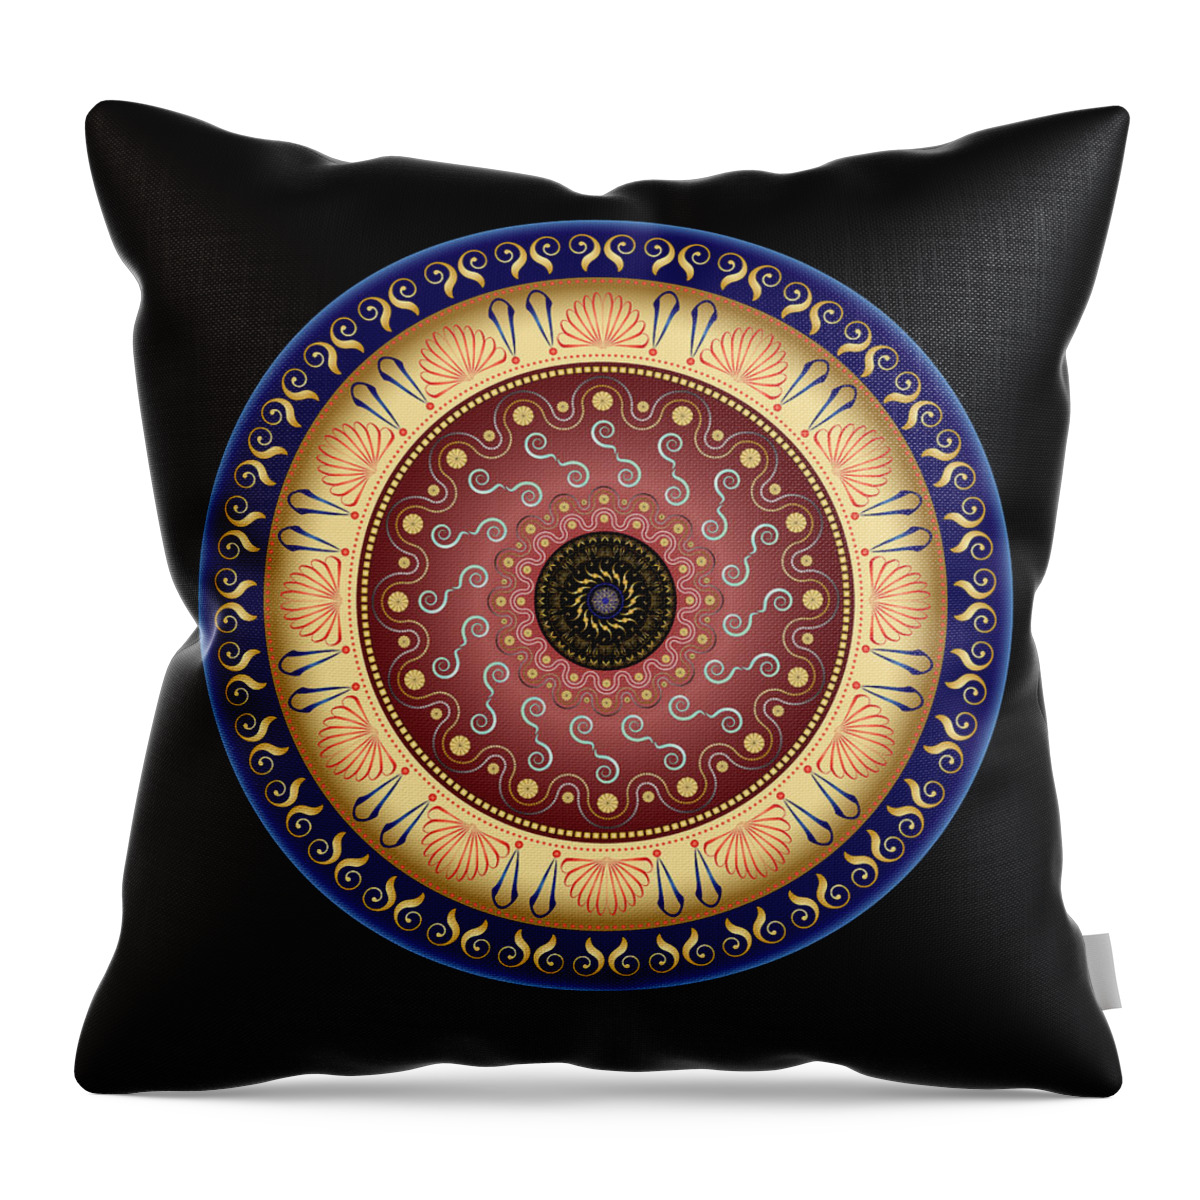 Mandala Throw Pillow featuring the digital art Circularium No 2646 by Alan Bennington